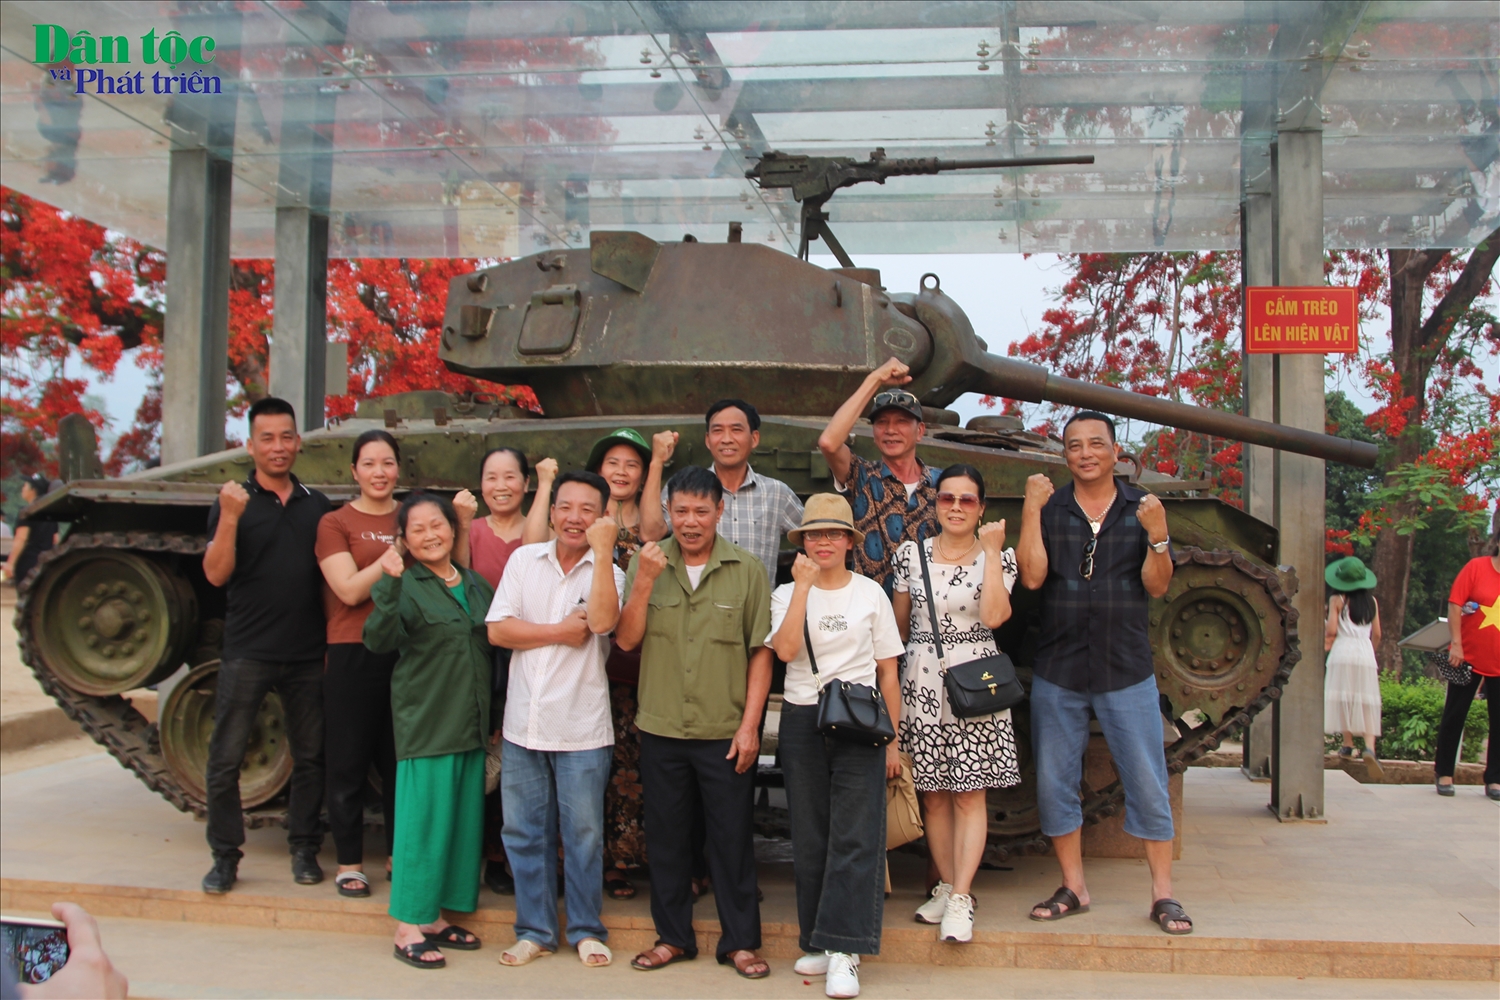 Tại đây còn giữ lại xác một trong hai chiếc xe tăng nặng 18 tấn mà tên Quan Ba Hécvuê đưa từ trung tâm Mường Thanh lên để phản kích quân đội Việt Nam. Đây cũng là khu vực được nhiều du khách lựa chọn để ghi hình lưu niệm.